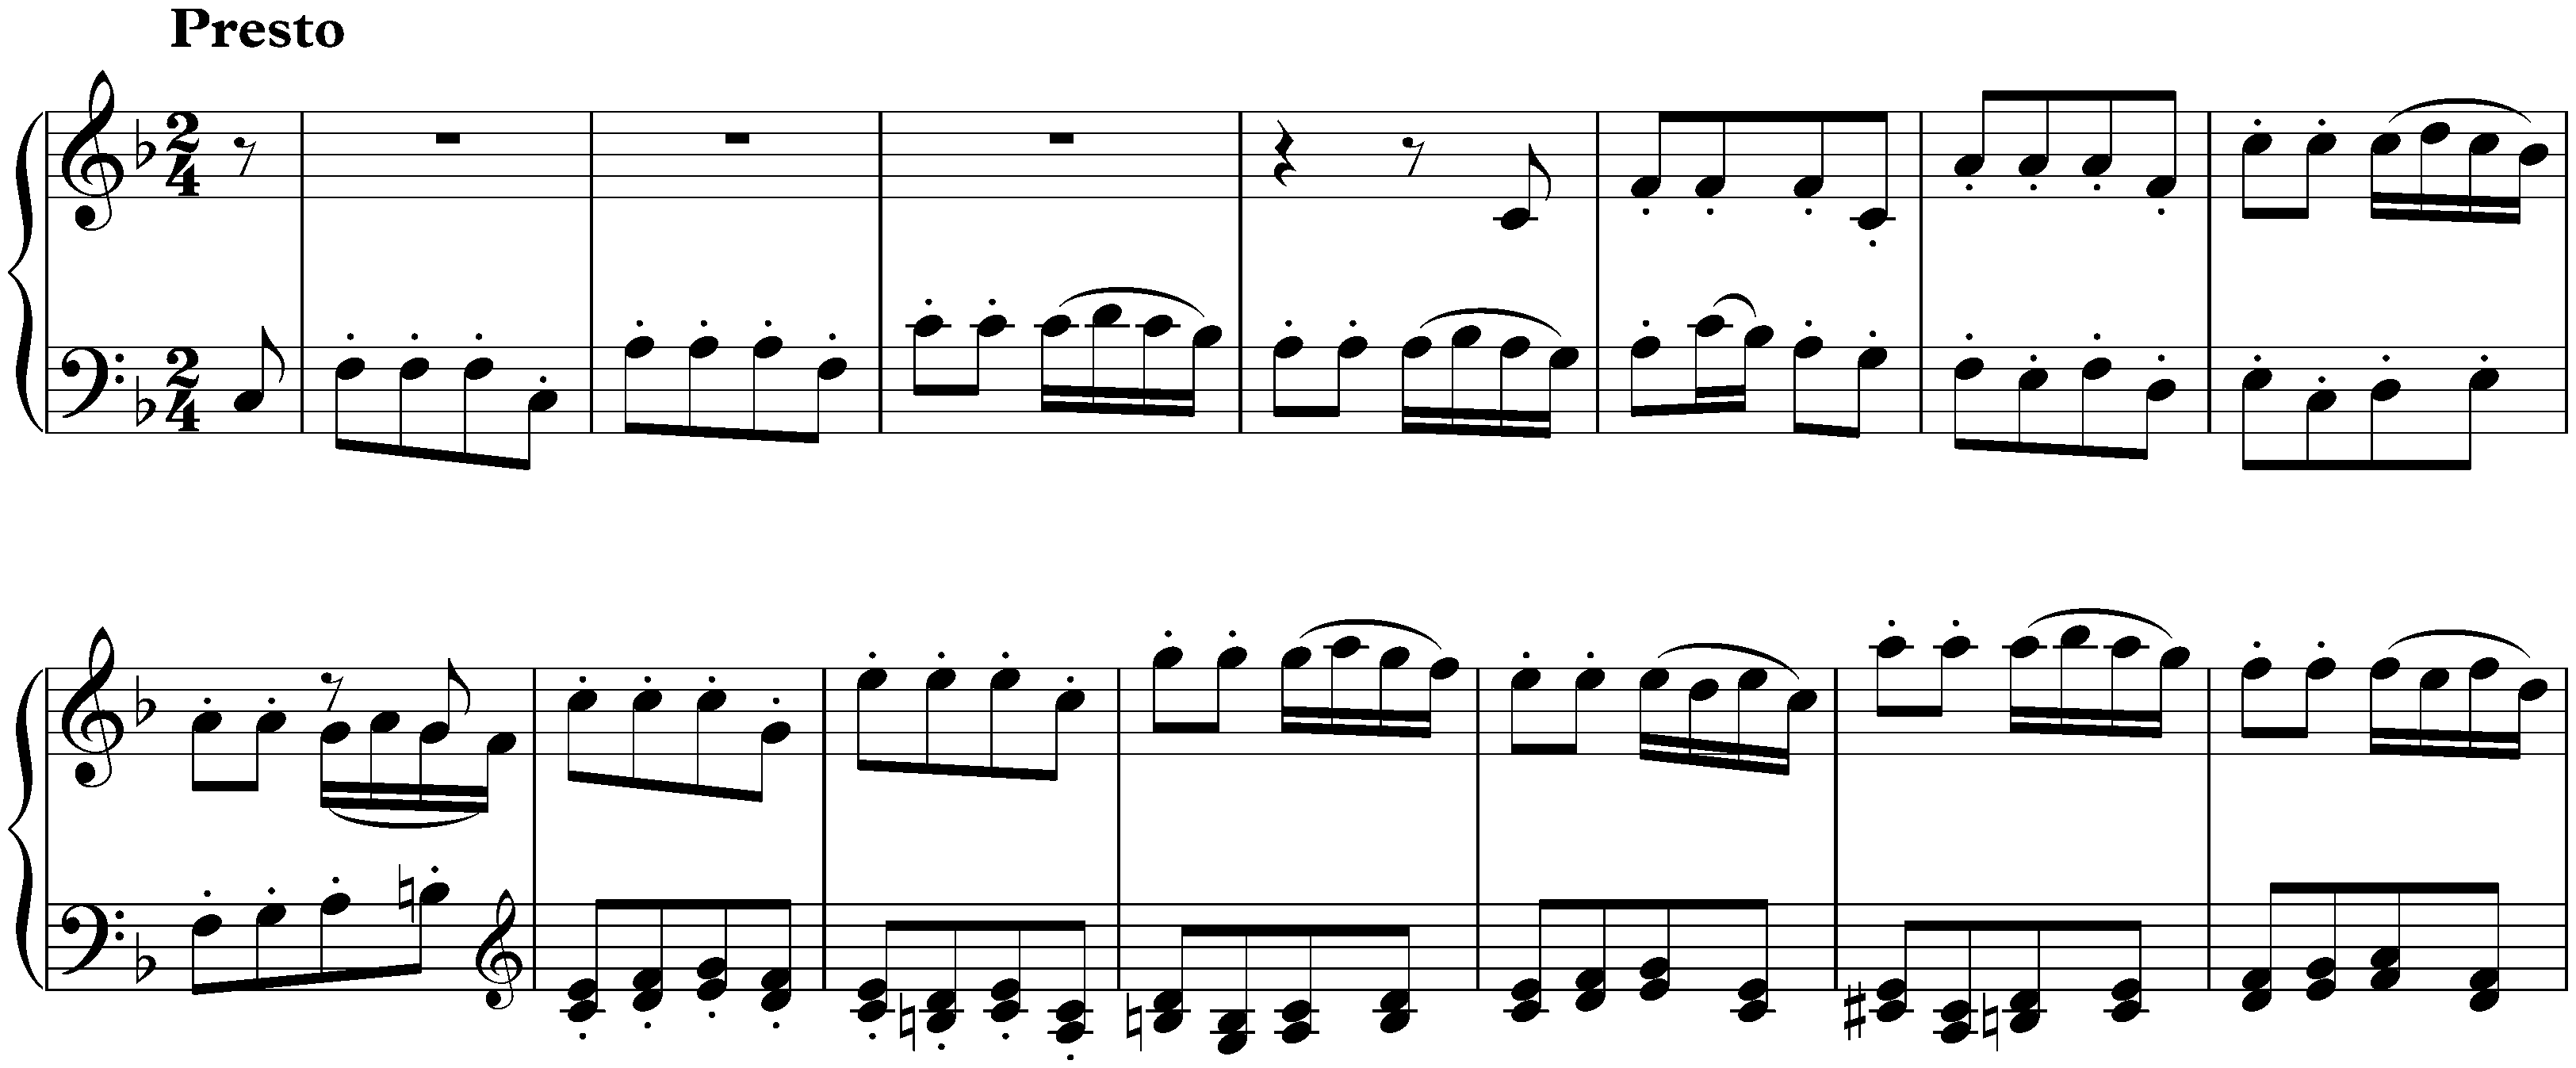 Sonata no. 6 in F major, op. 10 no. 2; 3. Presto